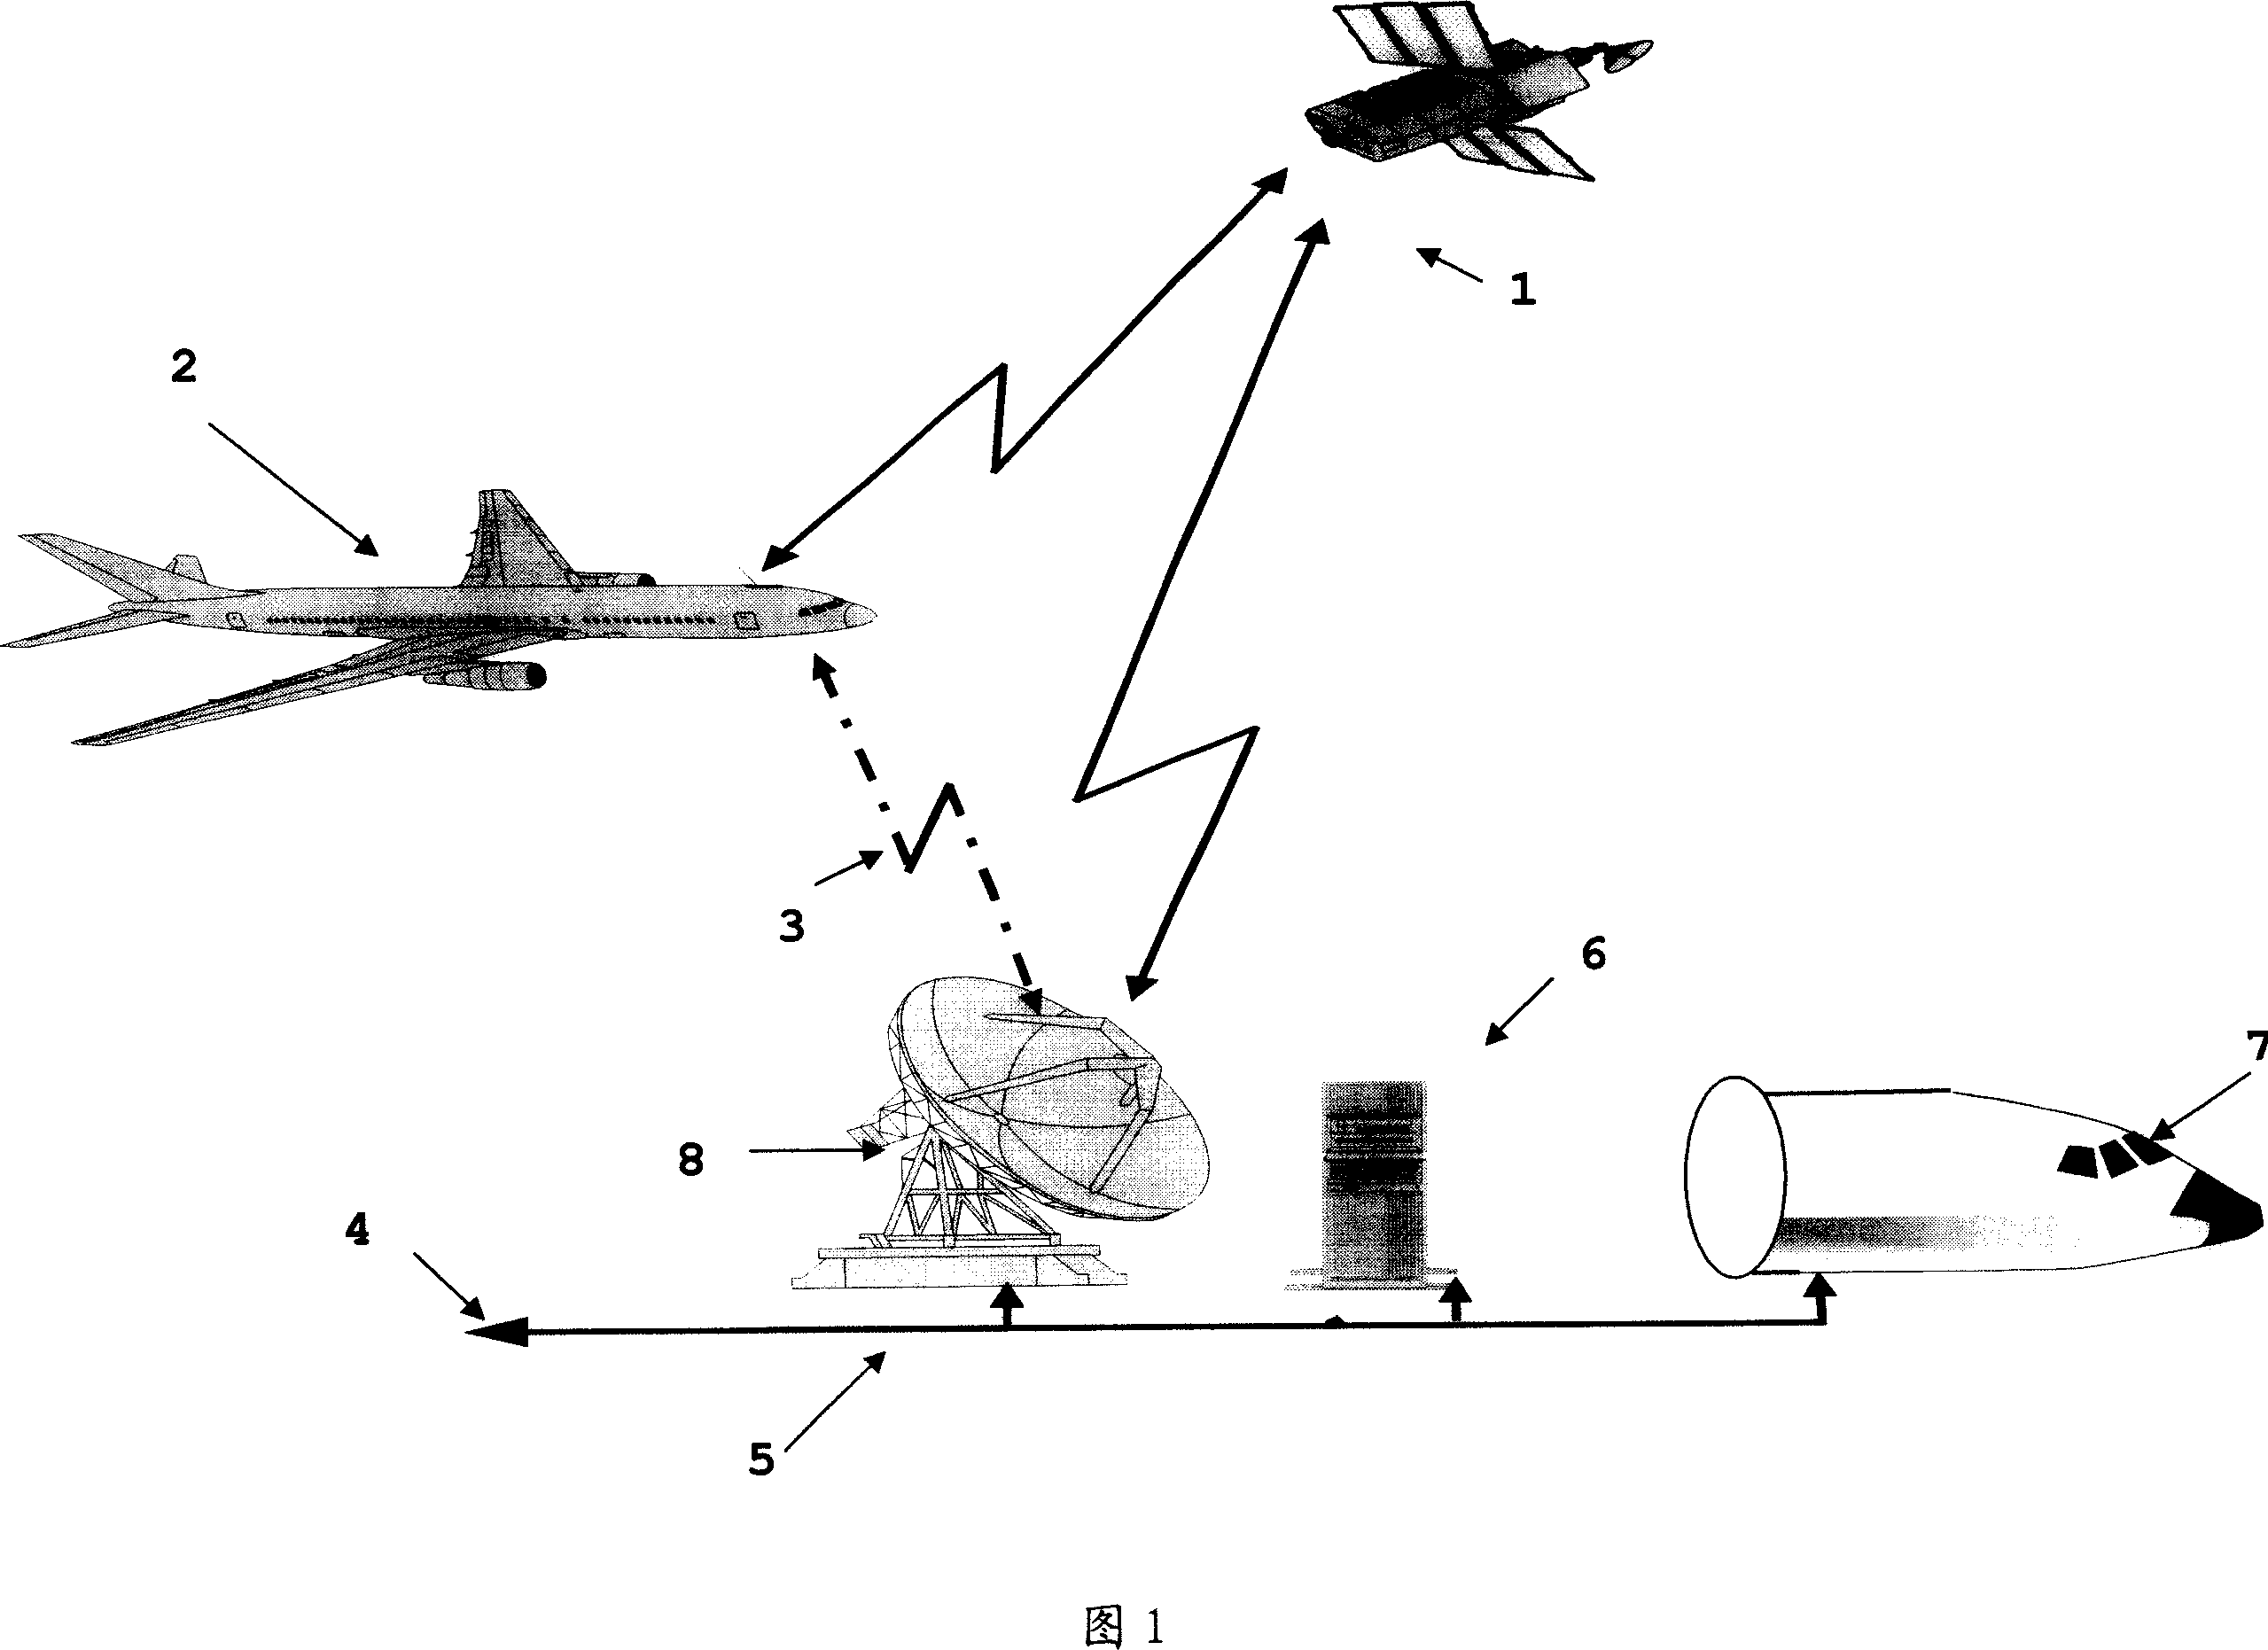 Safety landing apparatus